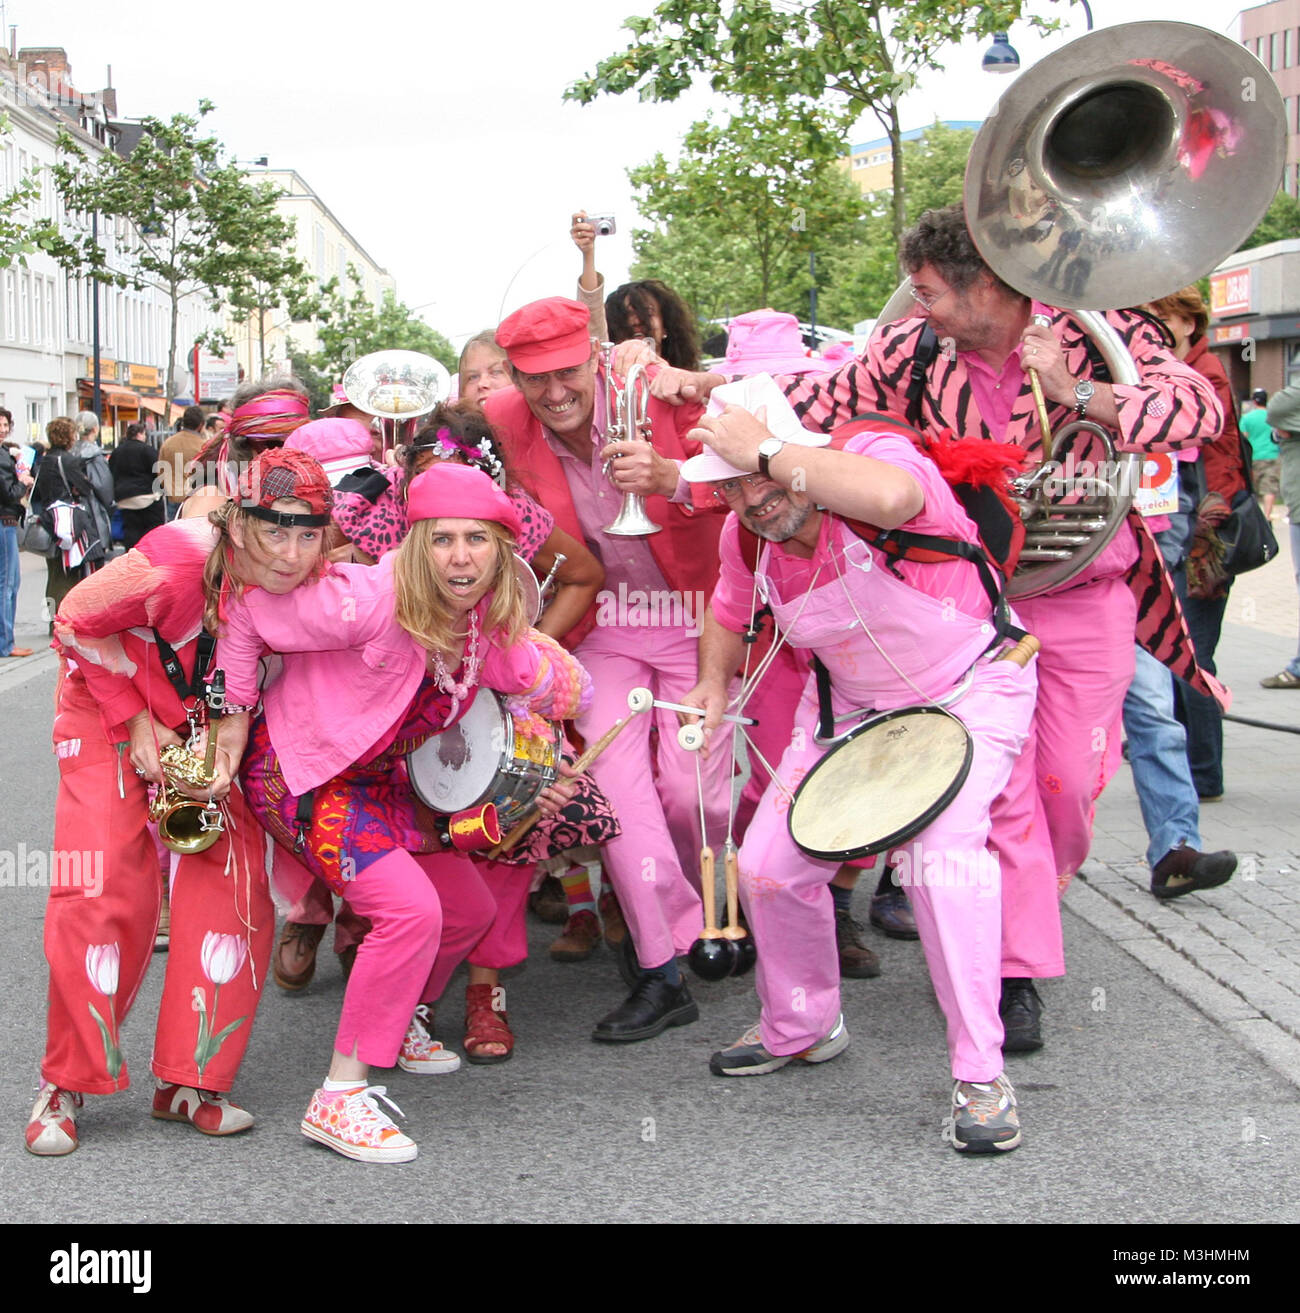 Spaßparade Hamburgs ist die altonale internationales Straßenkunst-Spektakel. Straßenumzug 1999 wurde der initiiert vom Stadtteilkulturzentrum Haus Drei, das nhi seitdem jährlich organiziert und durchführt. Er stellt das abschließende souligner von Deutschlands größtem Stadtteil- und Kulturfest dar, der altonale. Diese von Kunstwochen eingeleitete Literatur- und Veranstaltung zieht jährlich rund eine halbe millions Gäste und findet un vom 1. bis 17. Juni 2007 zur neunten mal statt (10-Jähriges Jubiläum 2008 : 30,5 -15,6..). Spaßparade Schlusstag säumen die am rund 100.000 Zuschauer an den Straßen. Banque D'Images